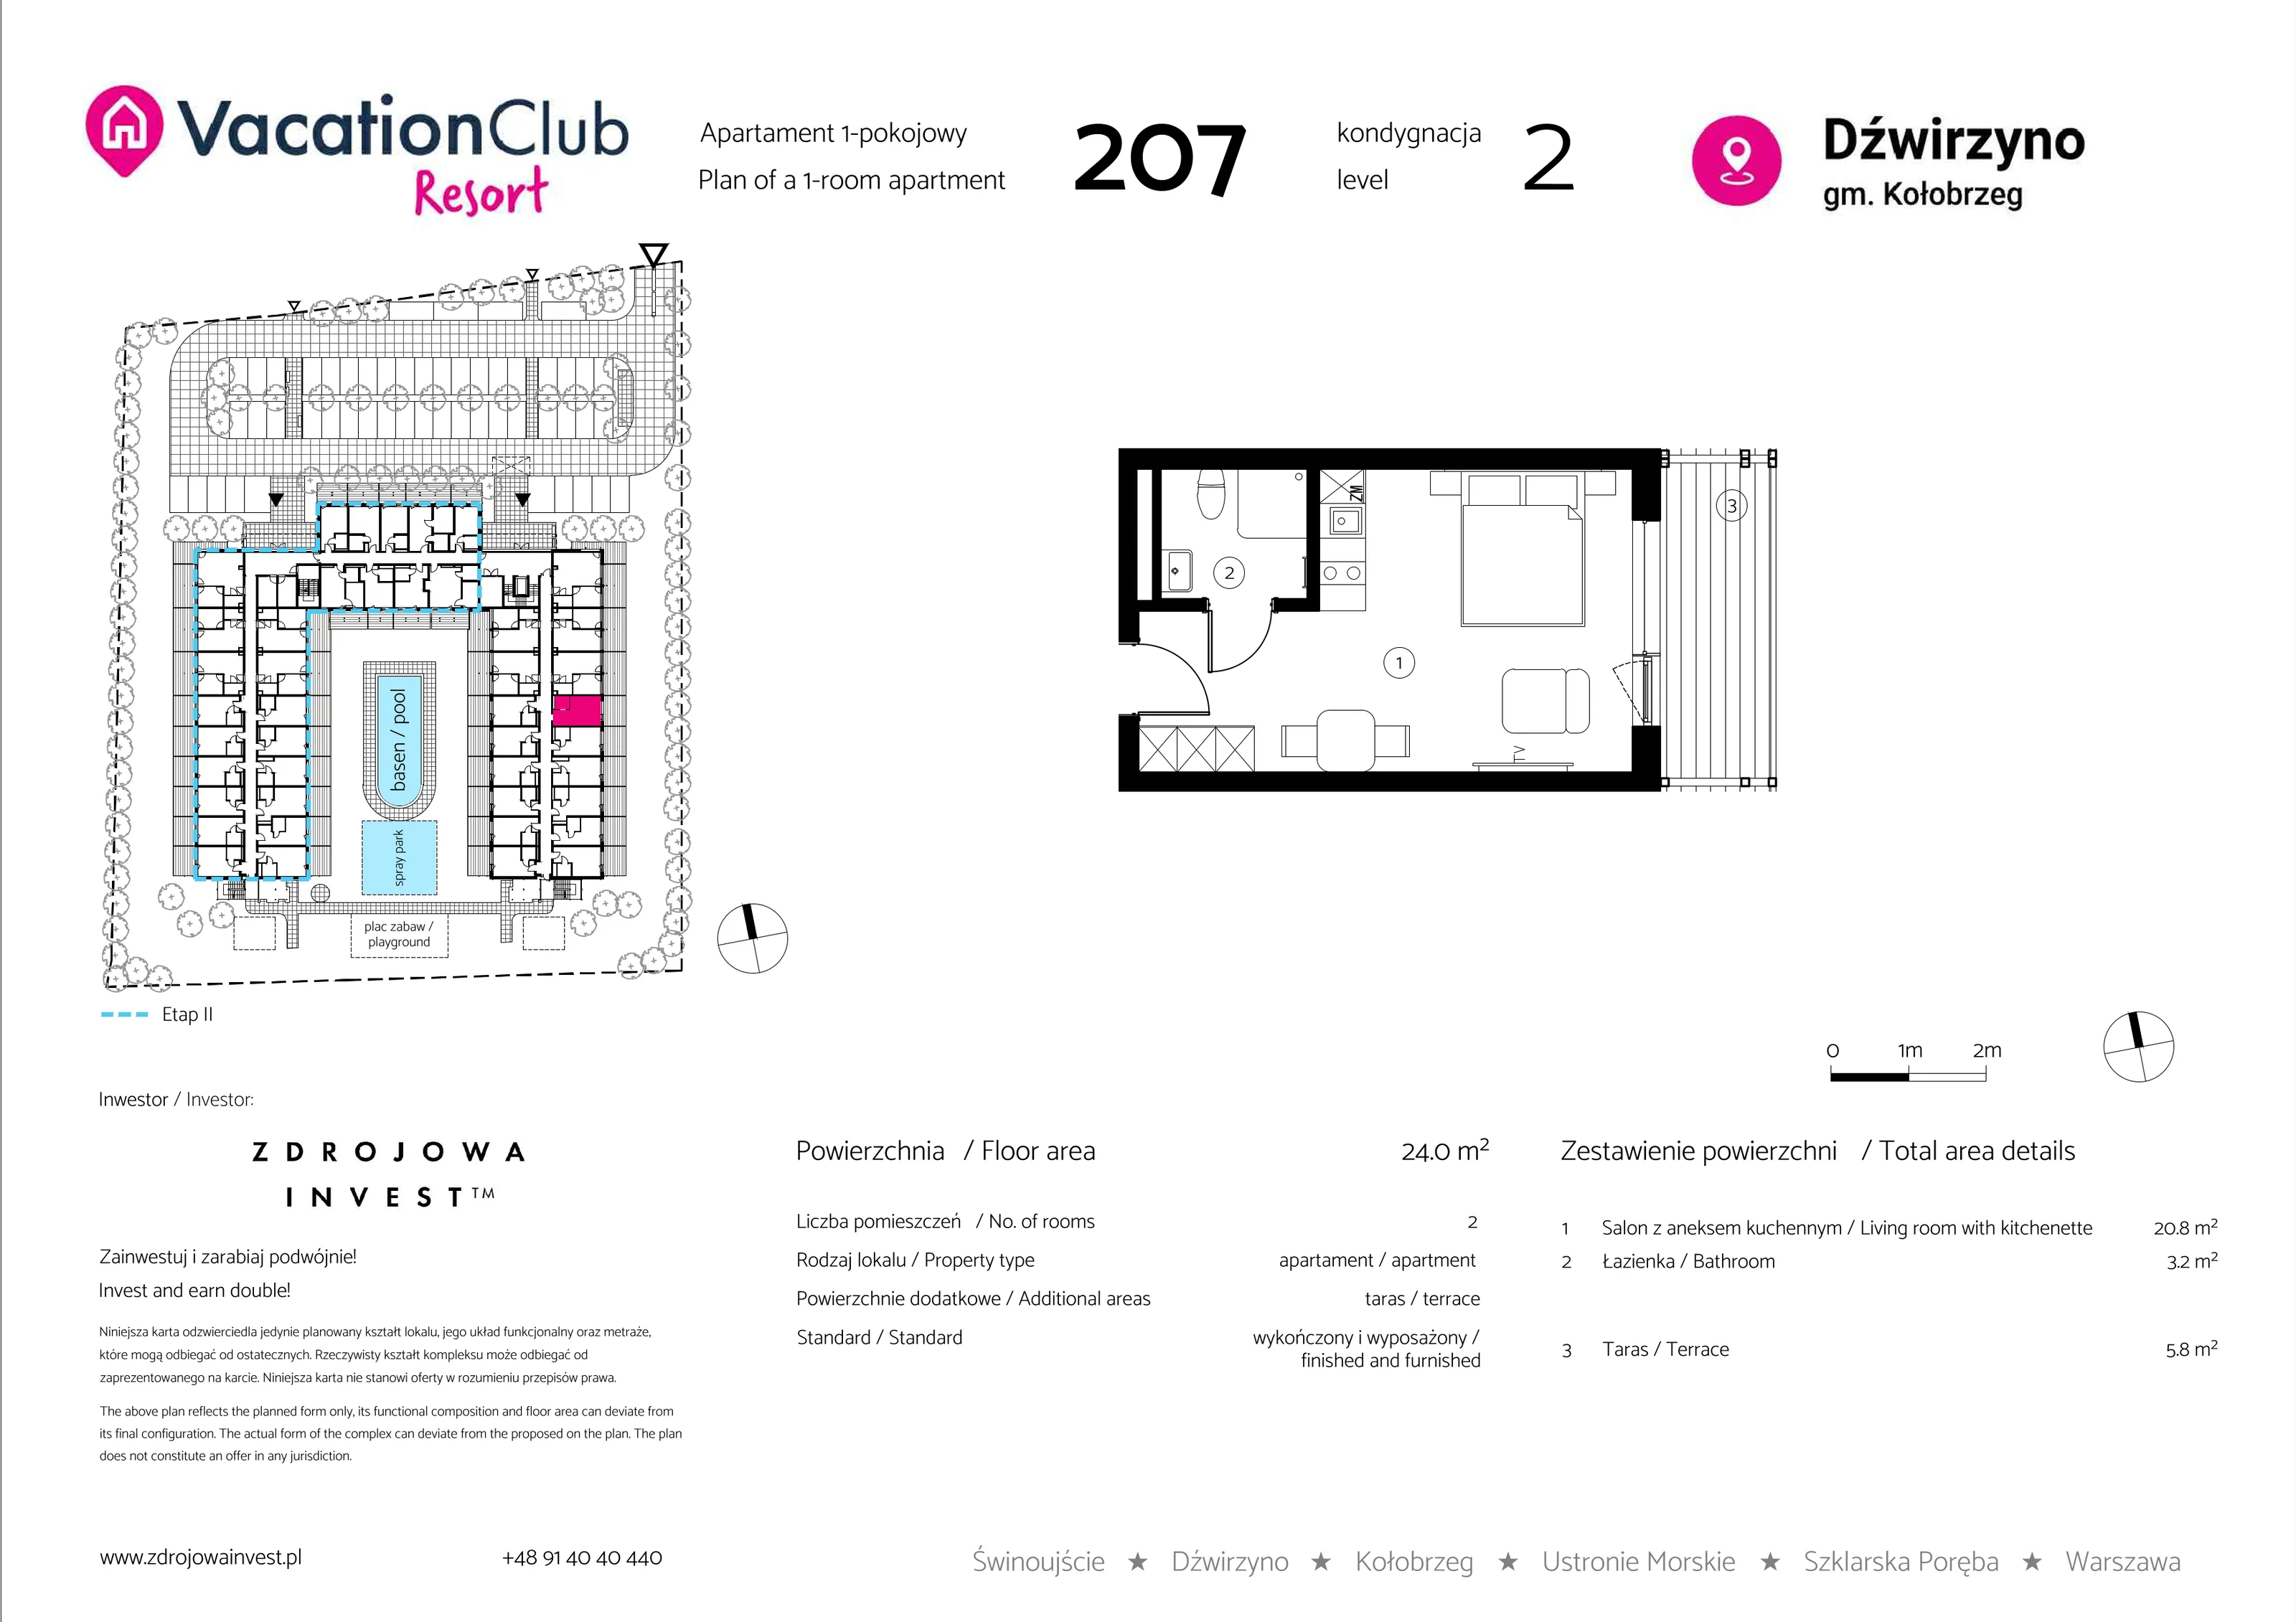 Apartament 24,00 m², piętro 1, oferta nr 207, Vacation Club Resort - apartamenty wakacyjne, Dźwirzyno, ul. Wczasowa 8